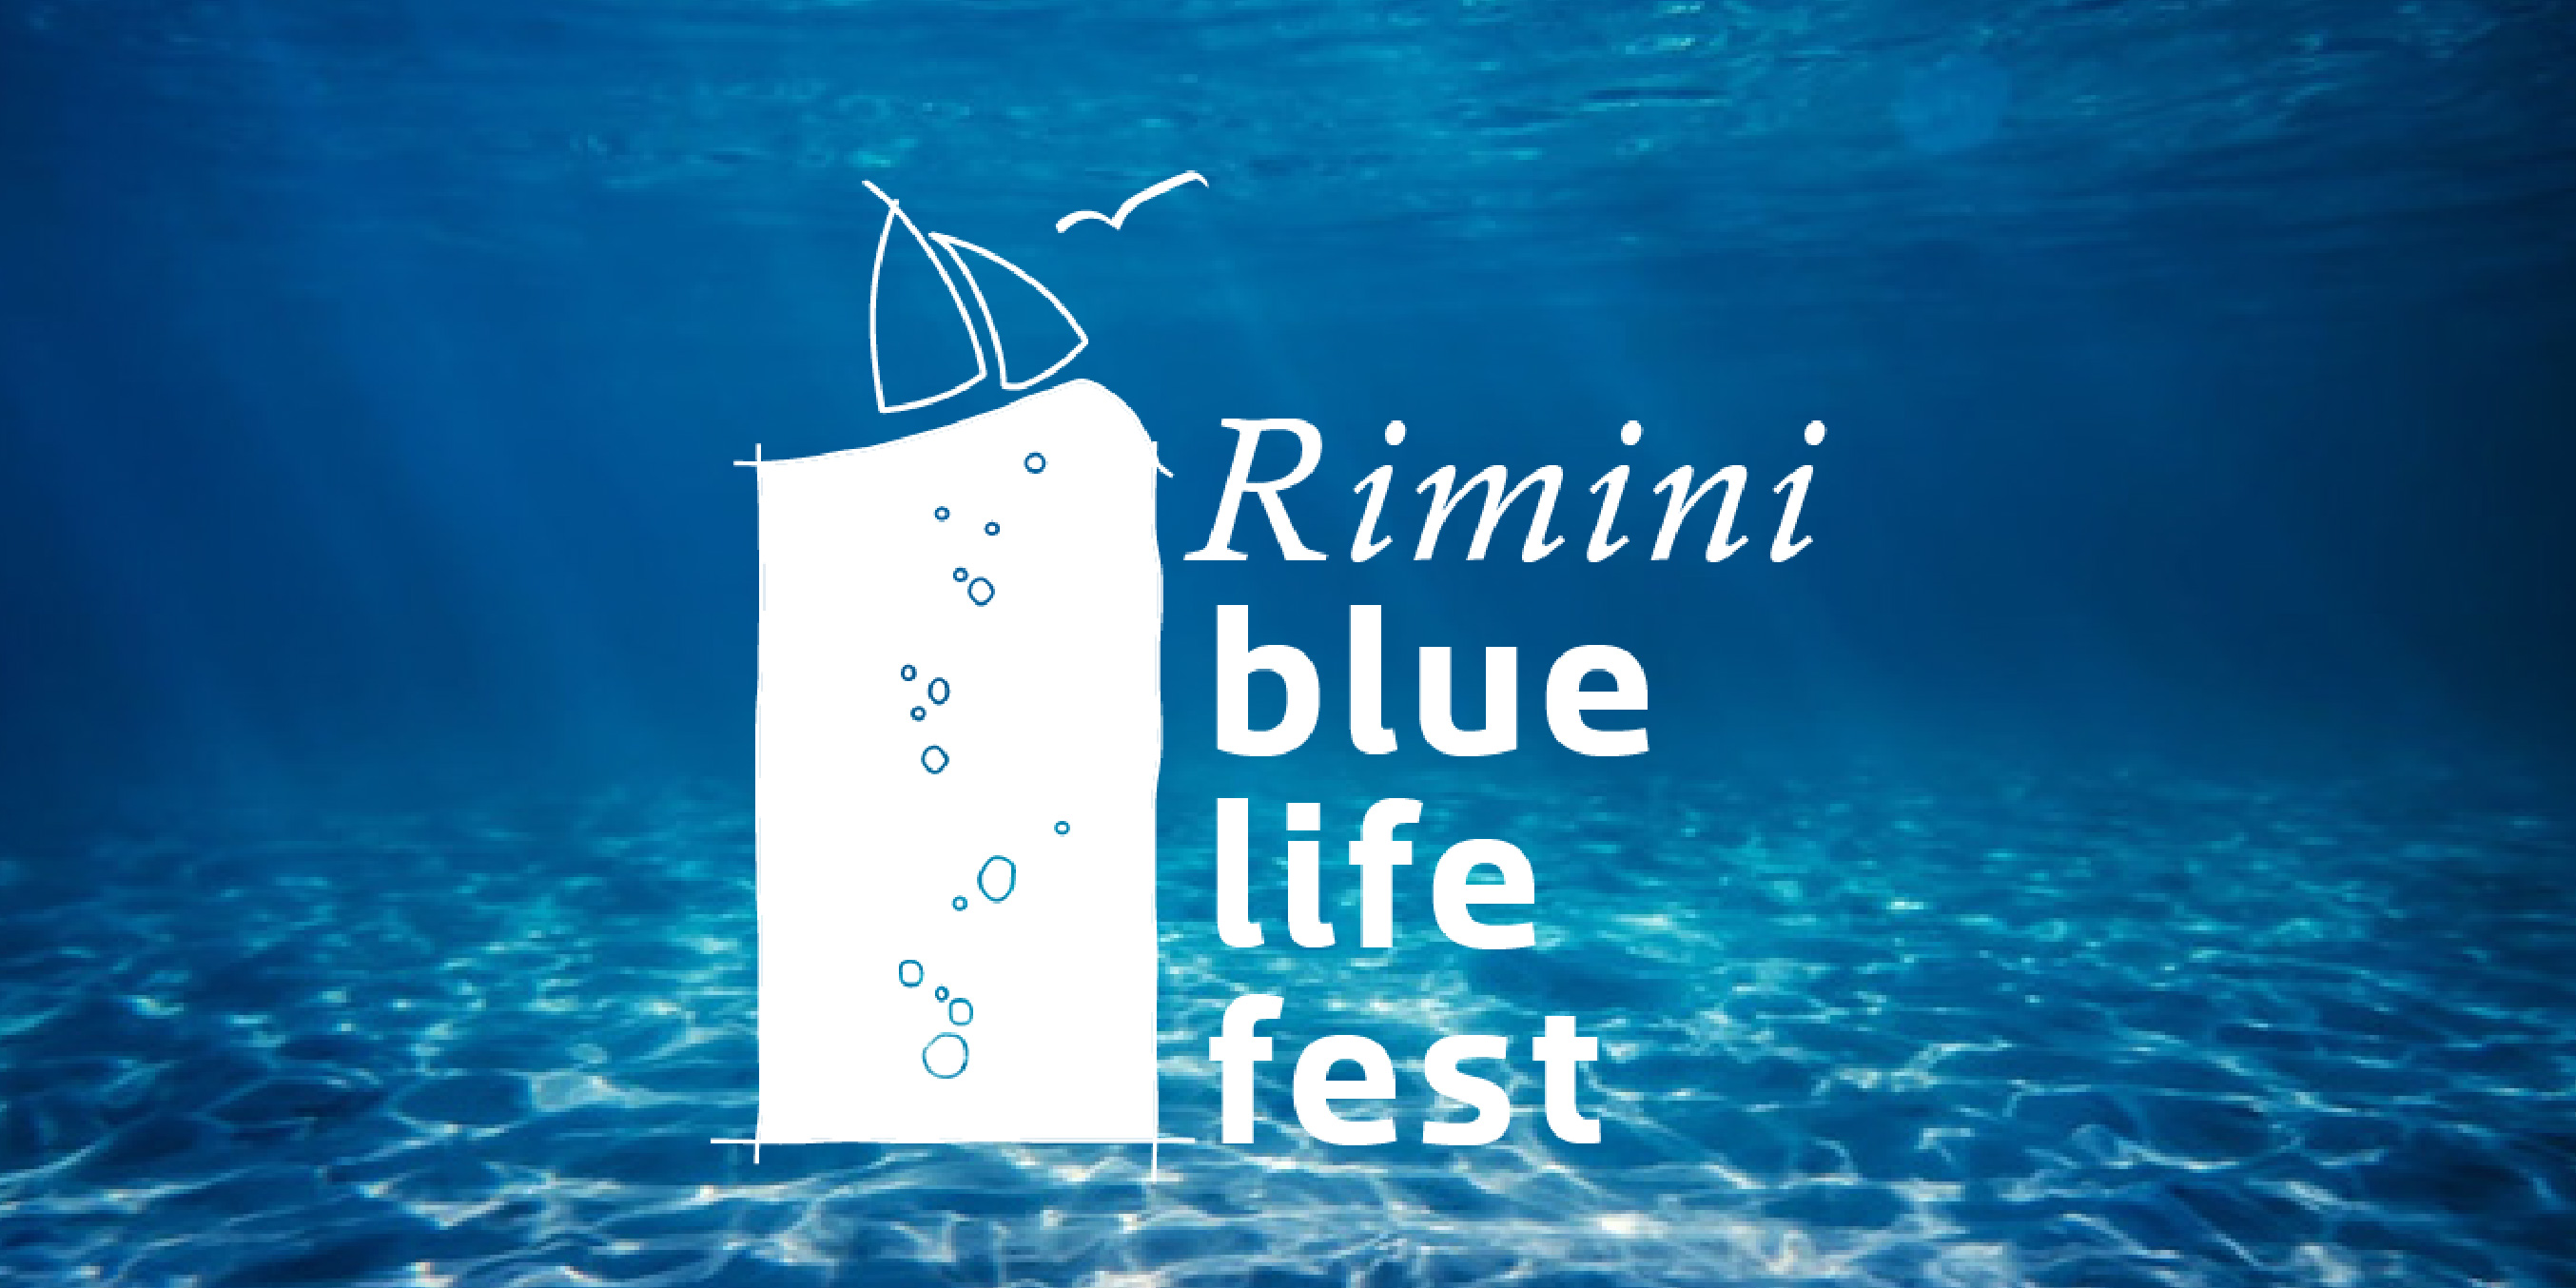 Blue life fest a Rimini: una settimana di eventi e incontri!